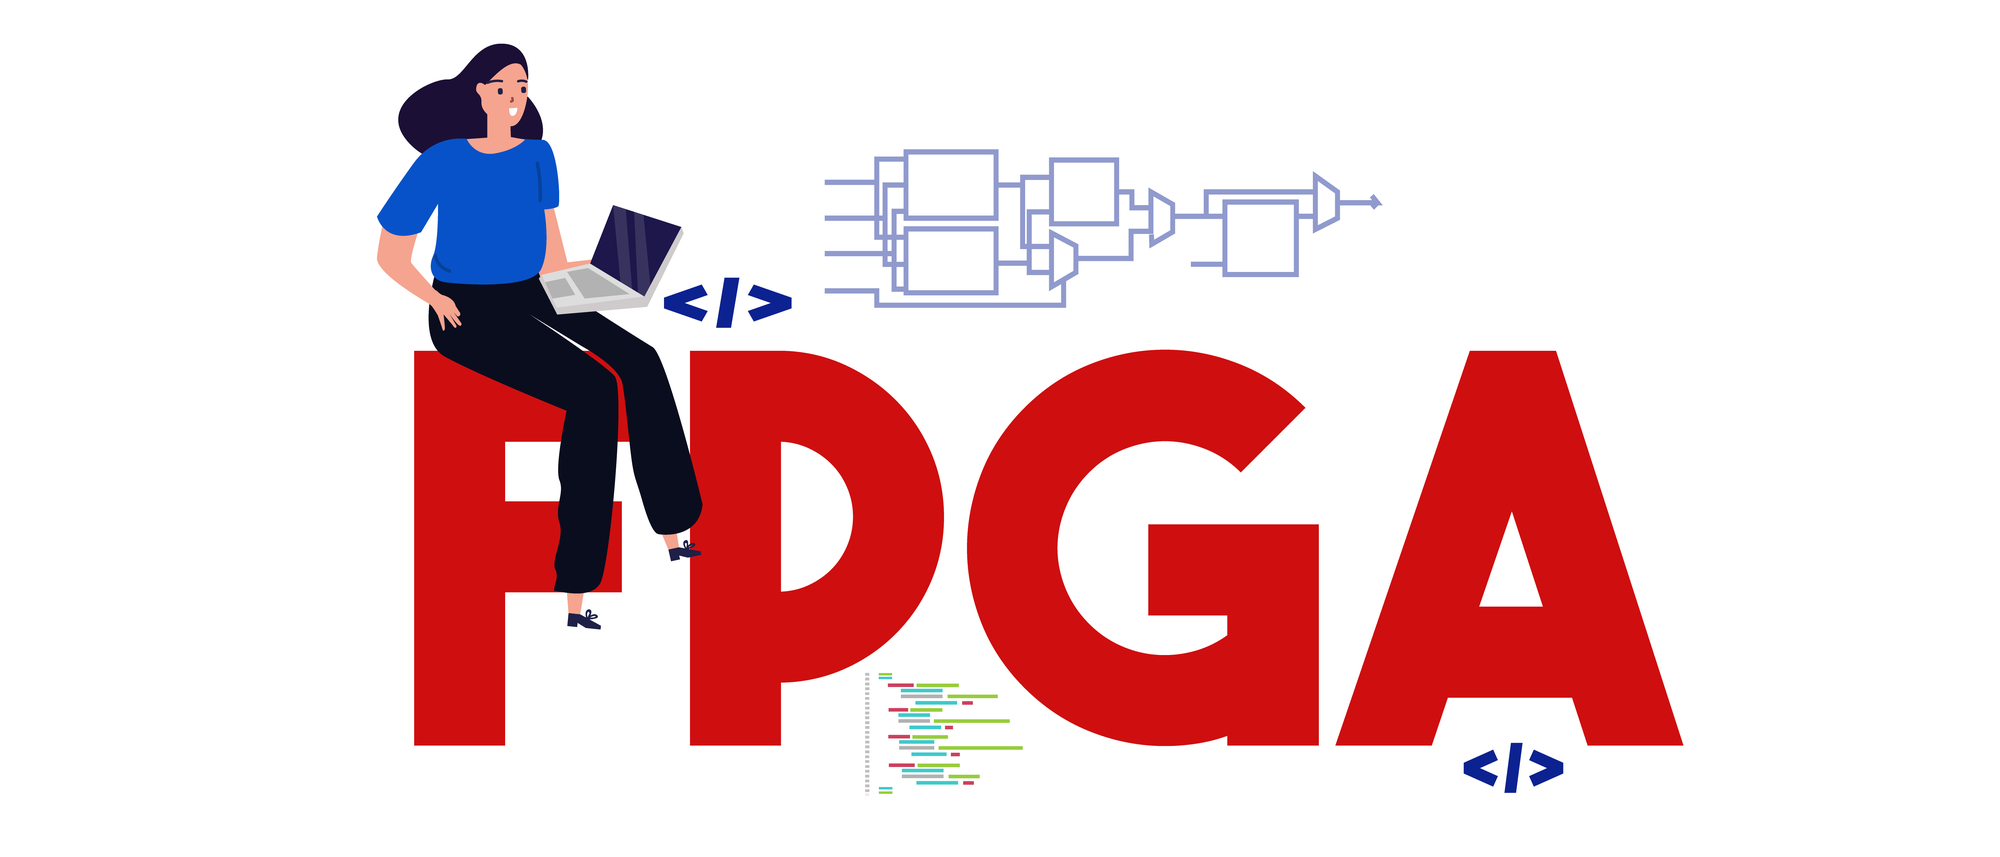 שבבים הניתנים לתכנון - FPGA. המחשה: depositphotos.com